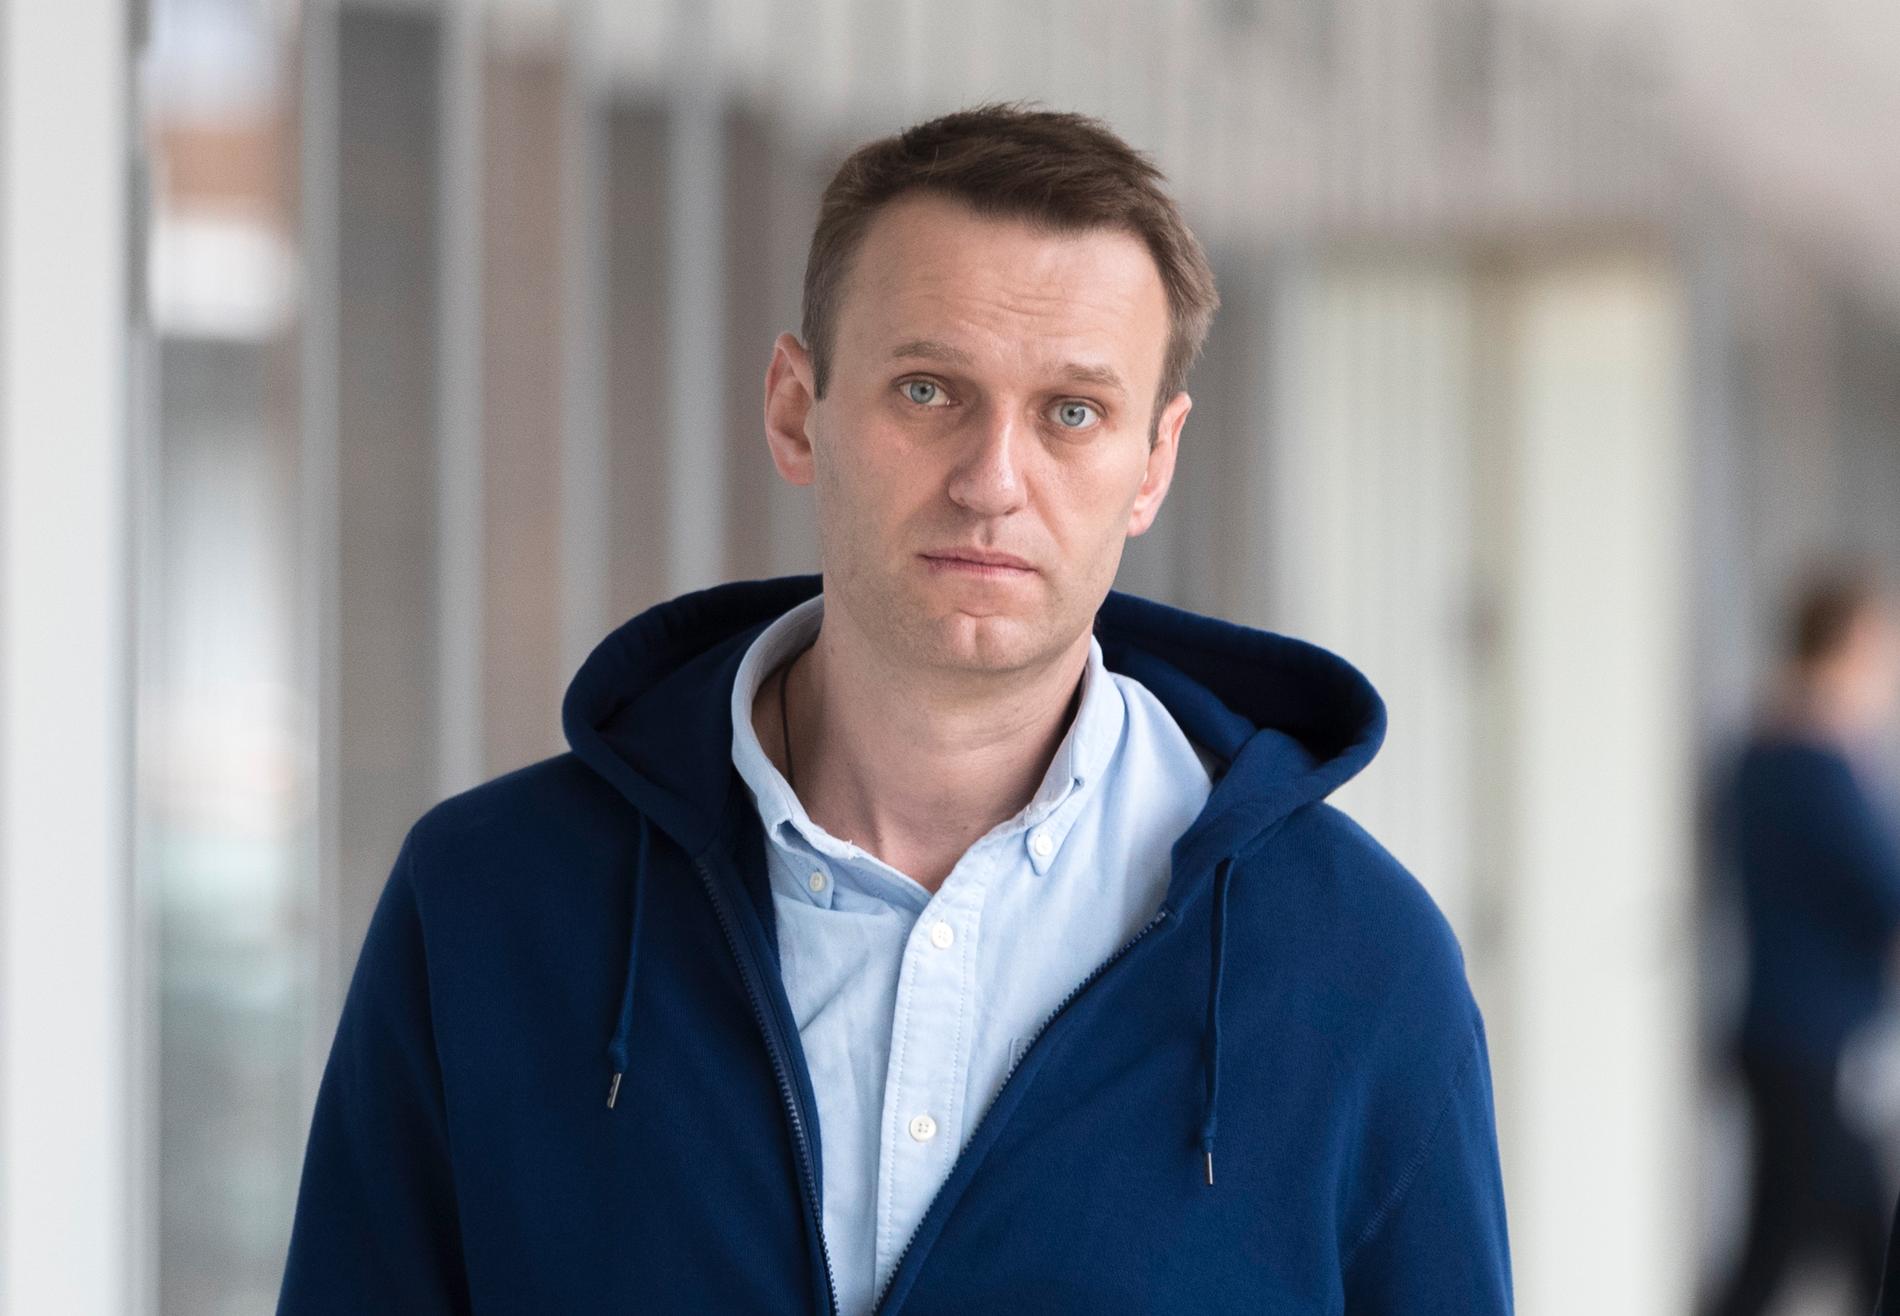 Den ryske oppositionsledaren Aleksej Navalnyj släpptes ur fängelse på fredagen efter att avtjänat ett 25 dagar långt straff för att ha organiserat otillåtna protester mot regimen.